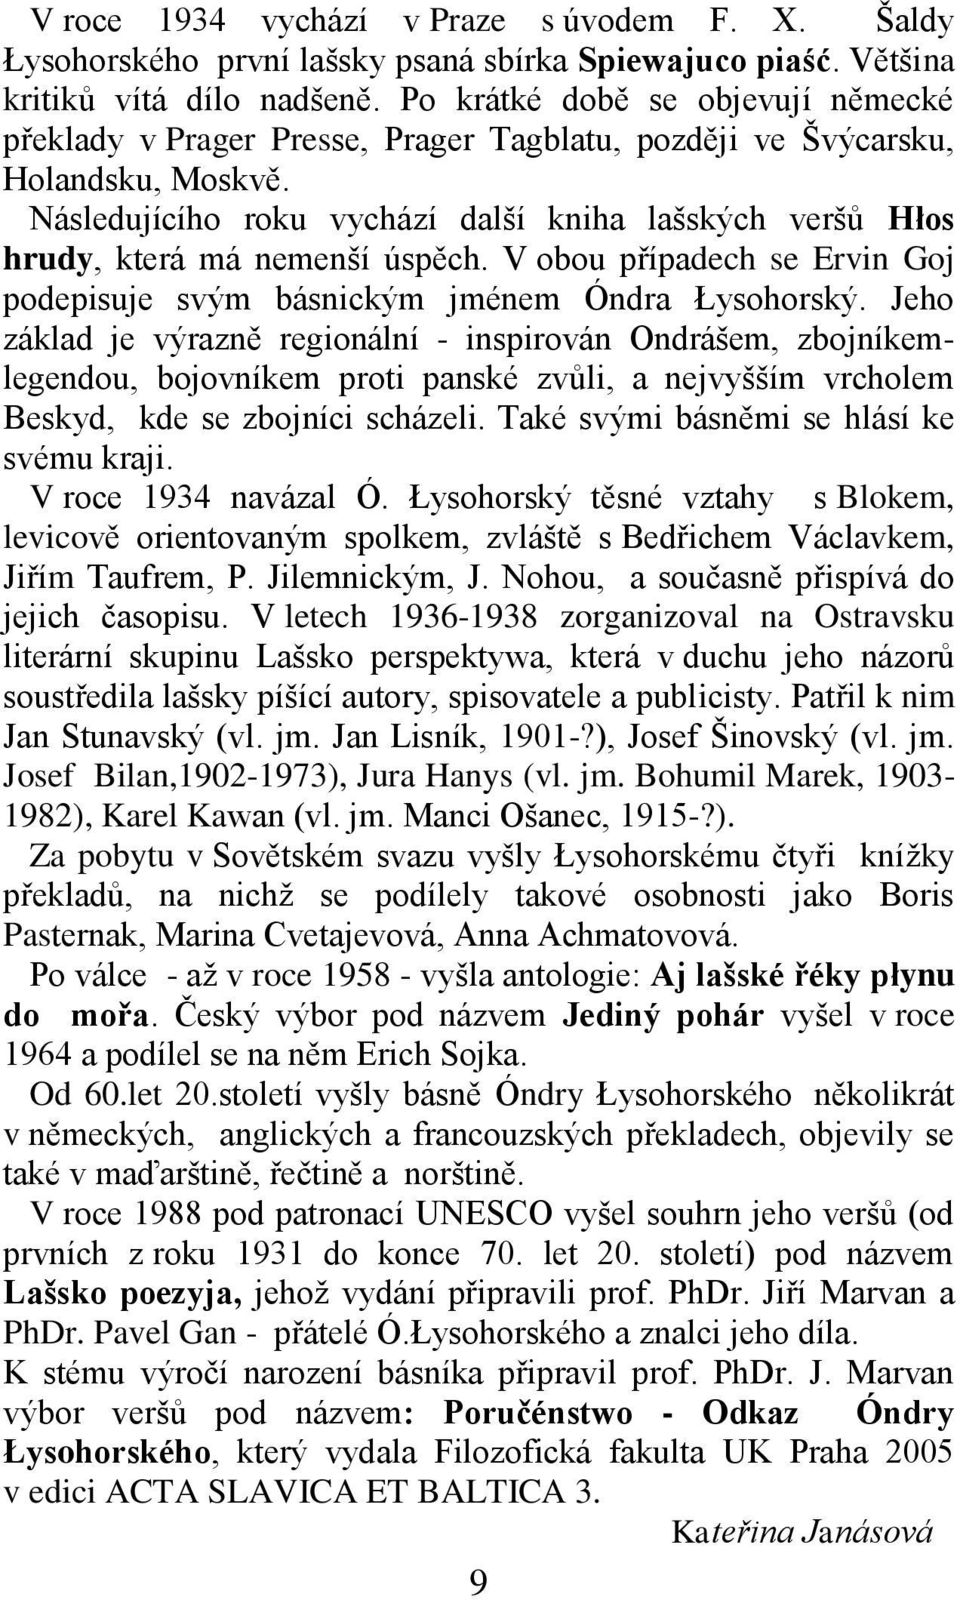 Následujícího roku vychází další kniha lašských veršů Hłos hrudy, která má nemenší úspěch. V obou případech se Ervin Goj podepisuje svým básnickým jménem Óndra Łysohorský.